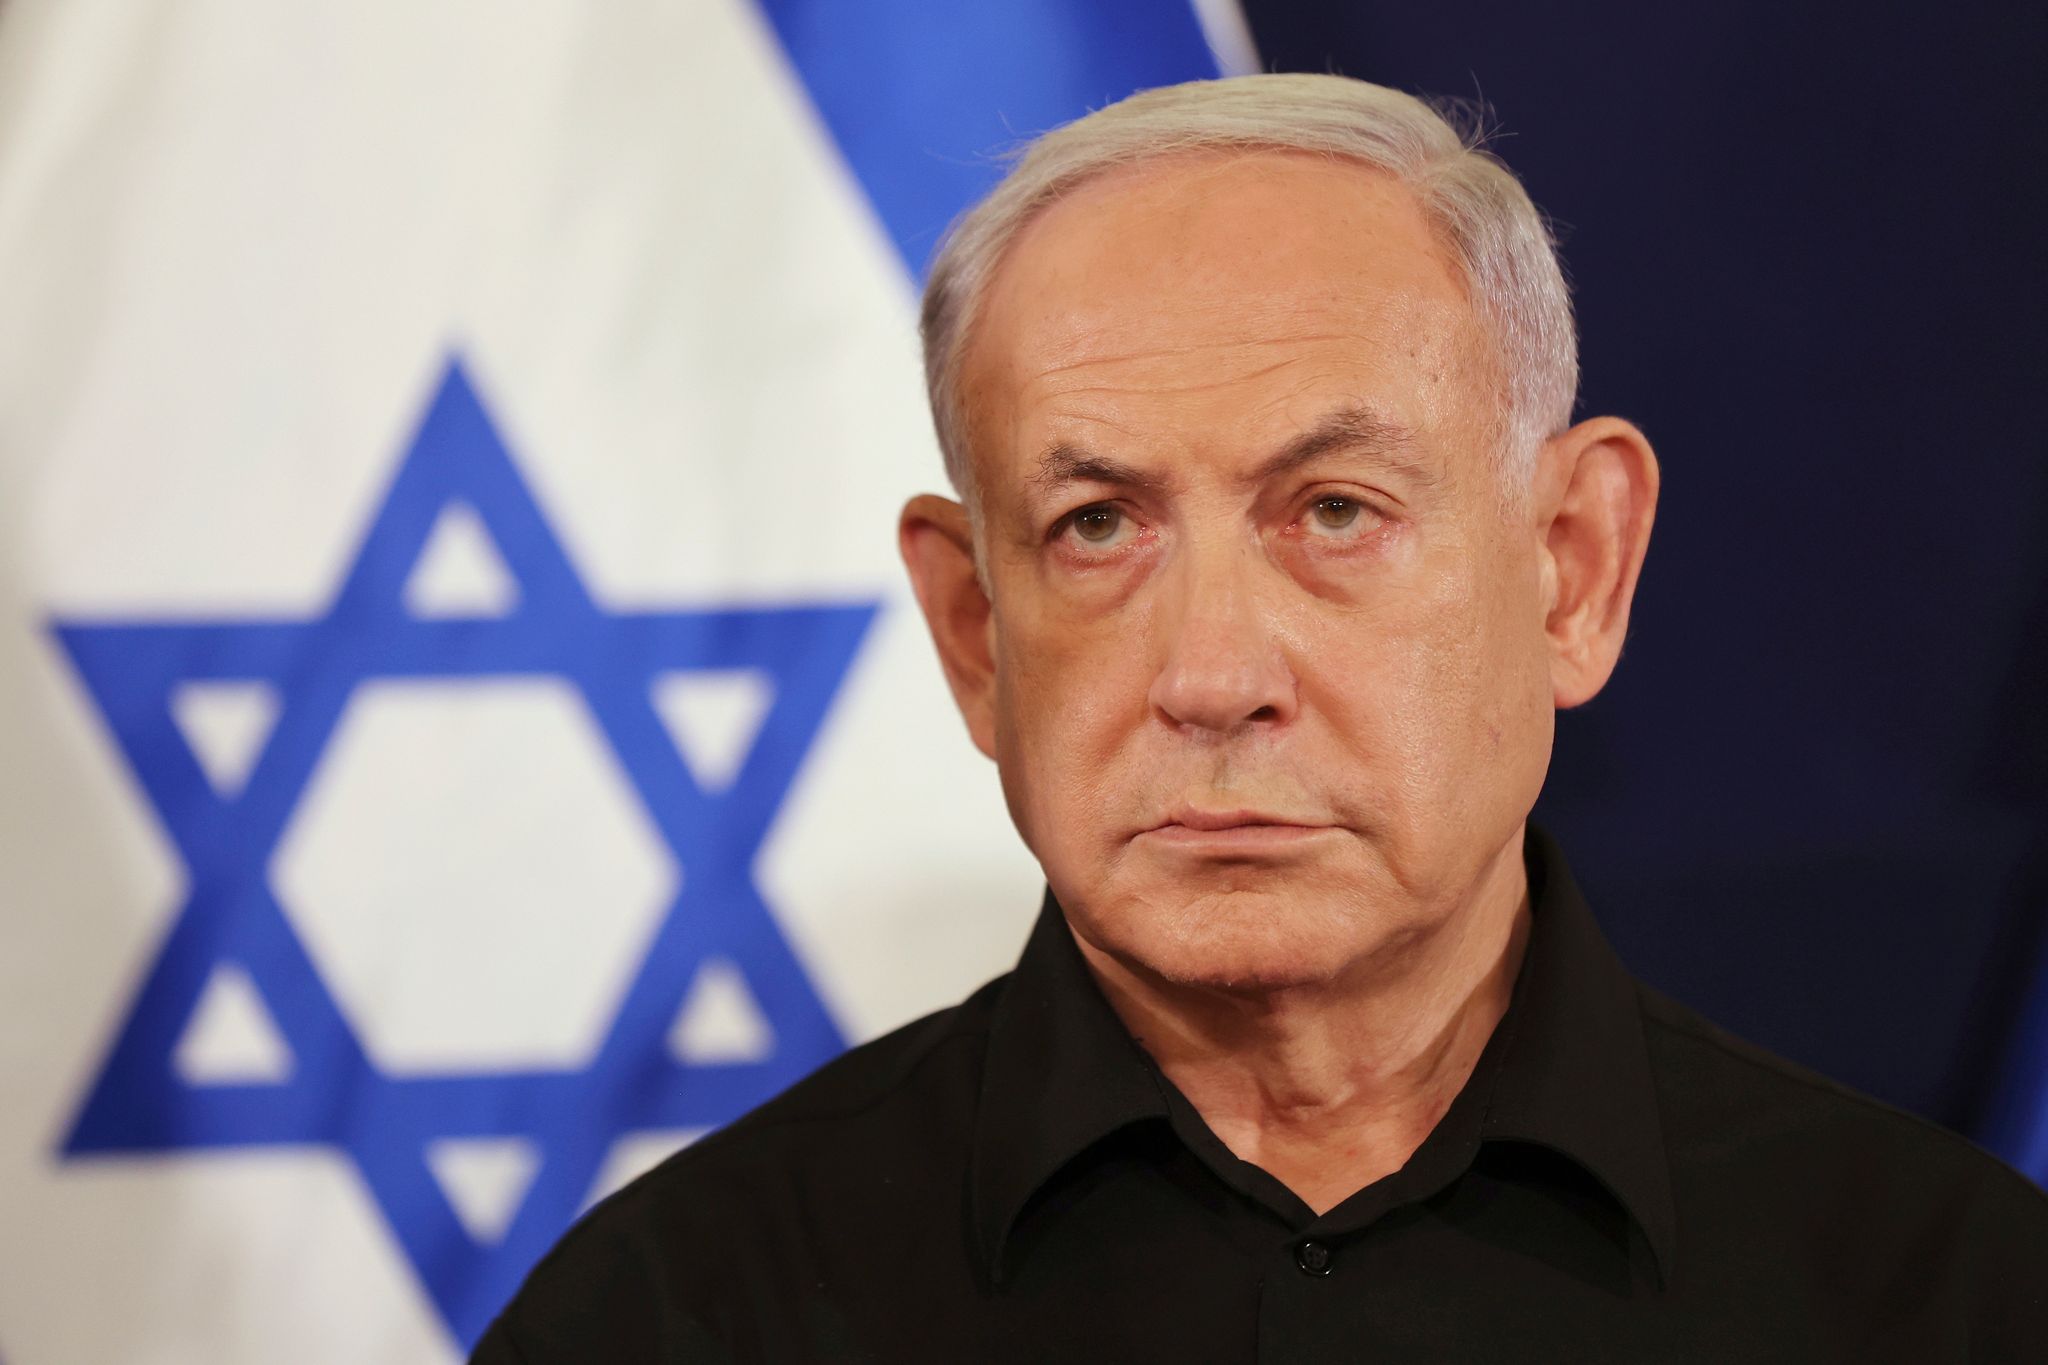 Am Samstag hatte Israels Premier Netanjahu eine seiner seltenen Pressekonferenzen gegeben - und musste sich kritische Fragen gefallen lassen.